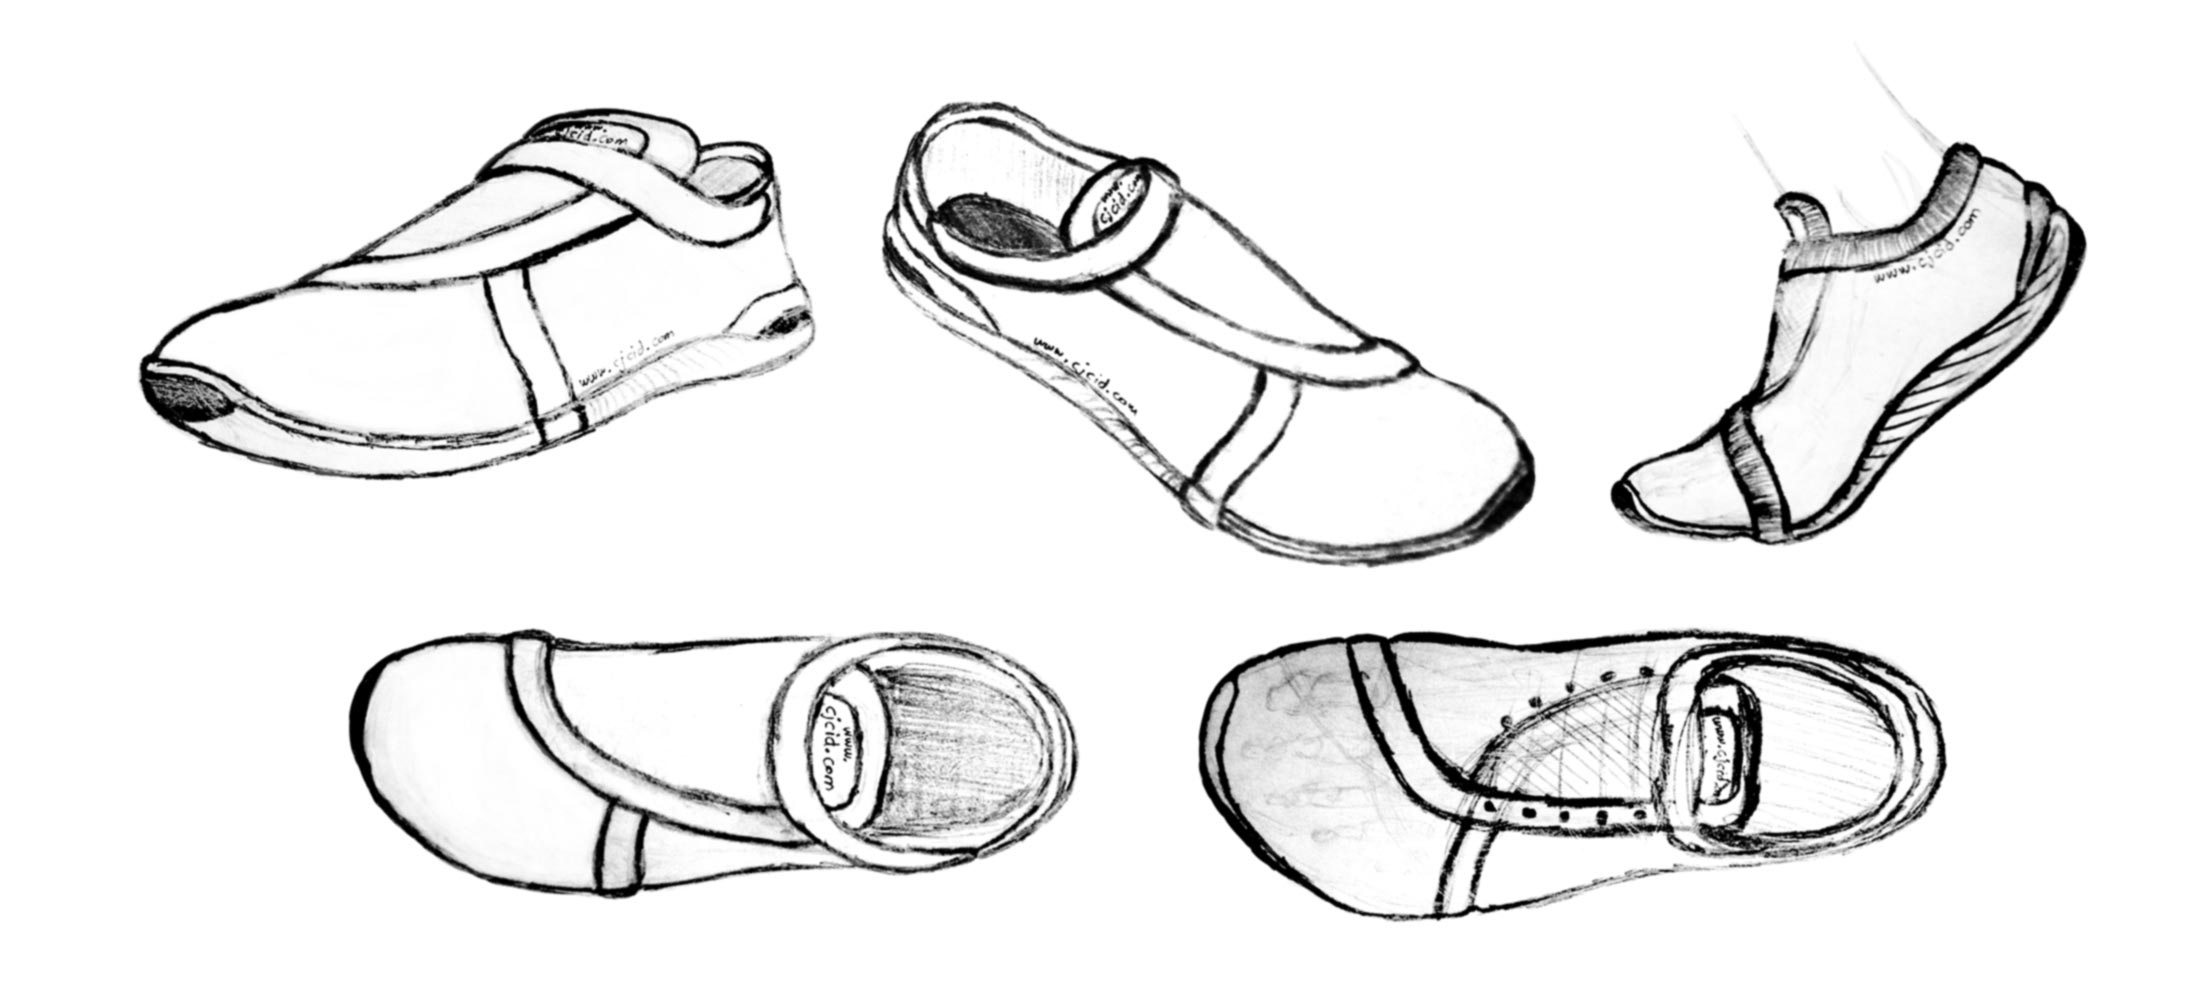 Developing the idea of the walking shoe “CJ Groovy Feel”